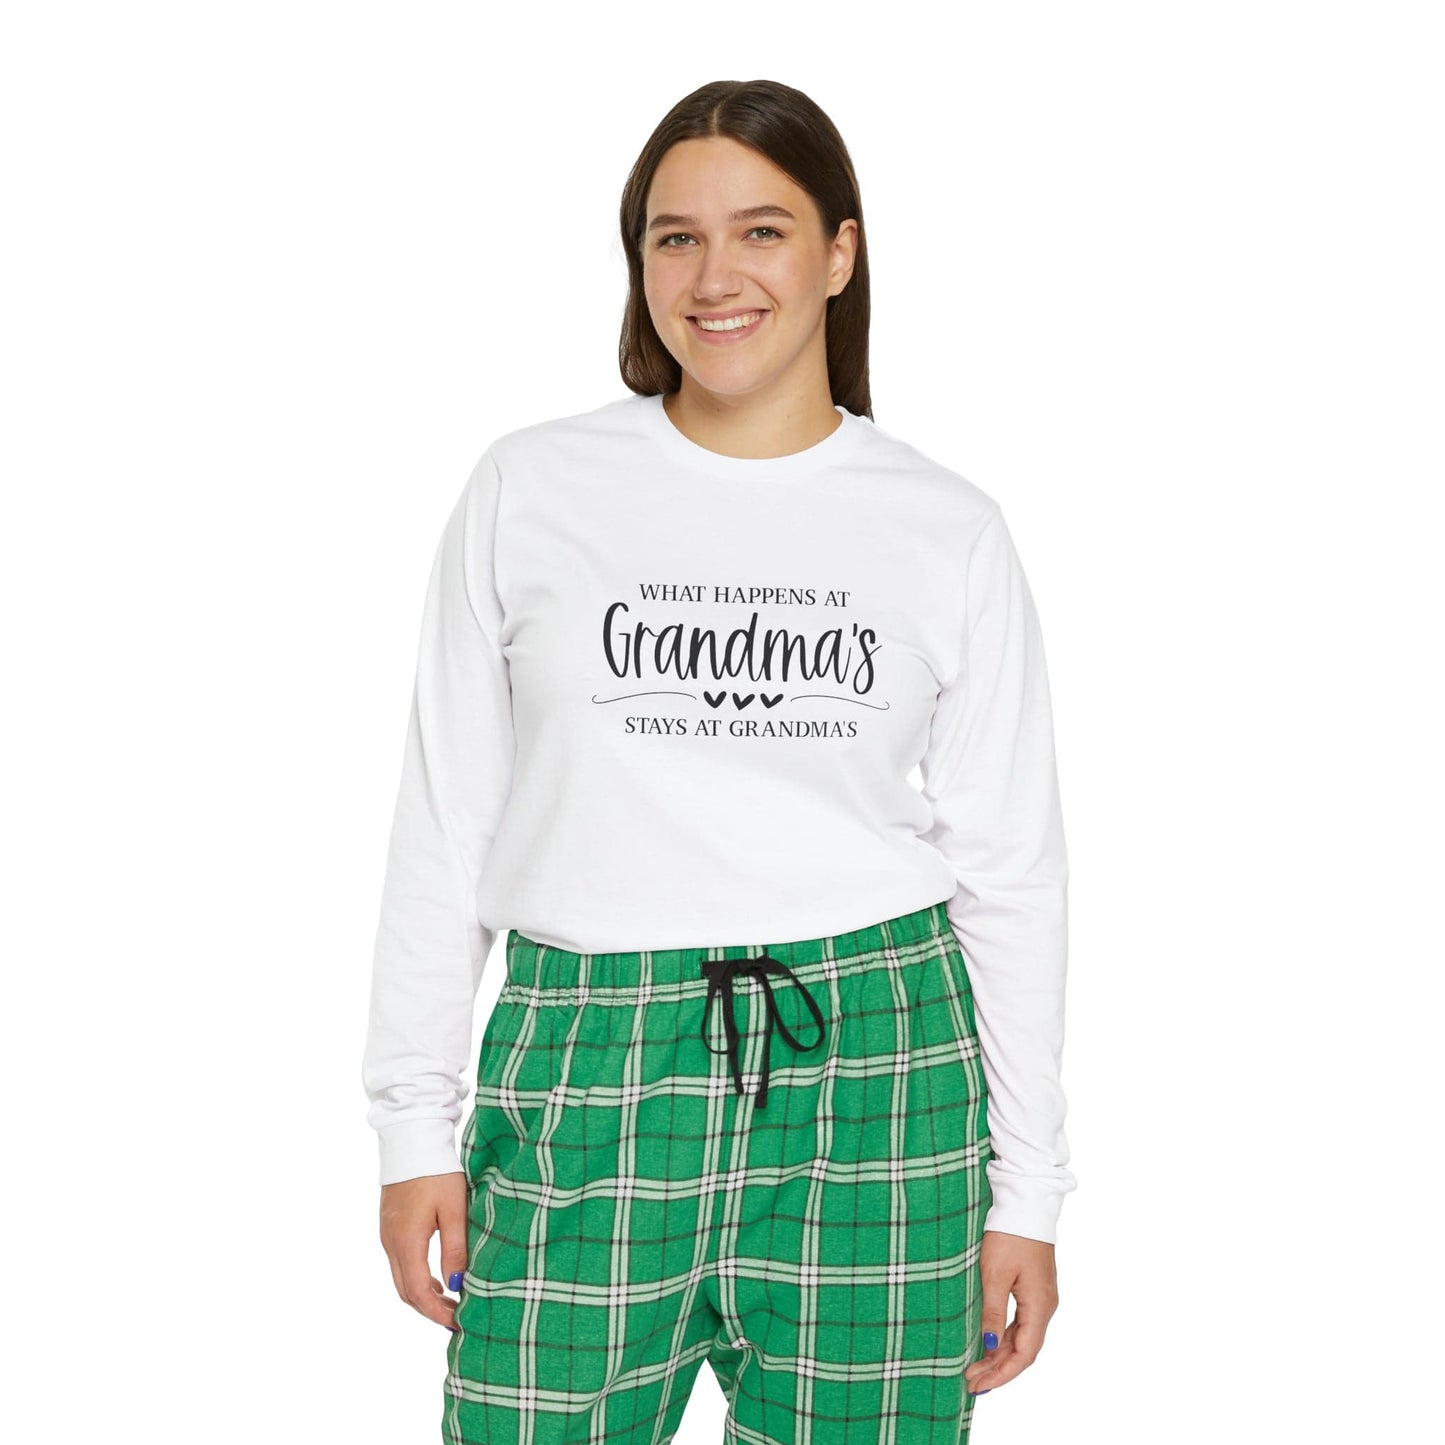 What Happens At Grandma's Stays At Grandma's Women's Long Sleeve Pajama Set